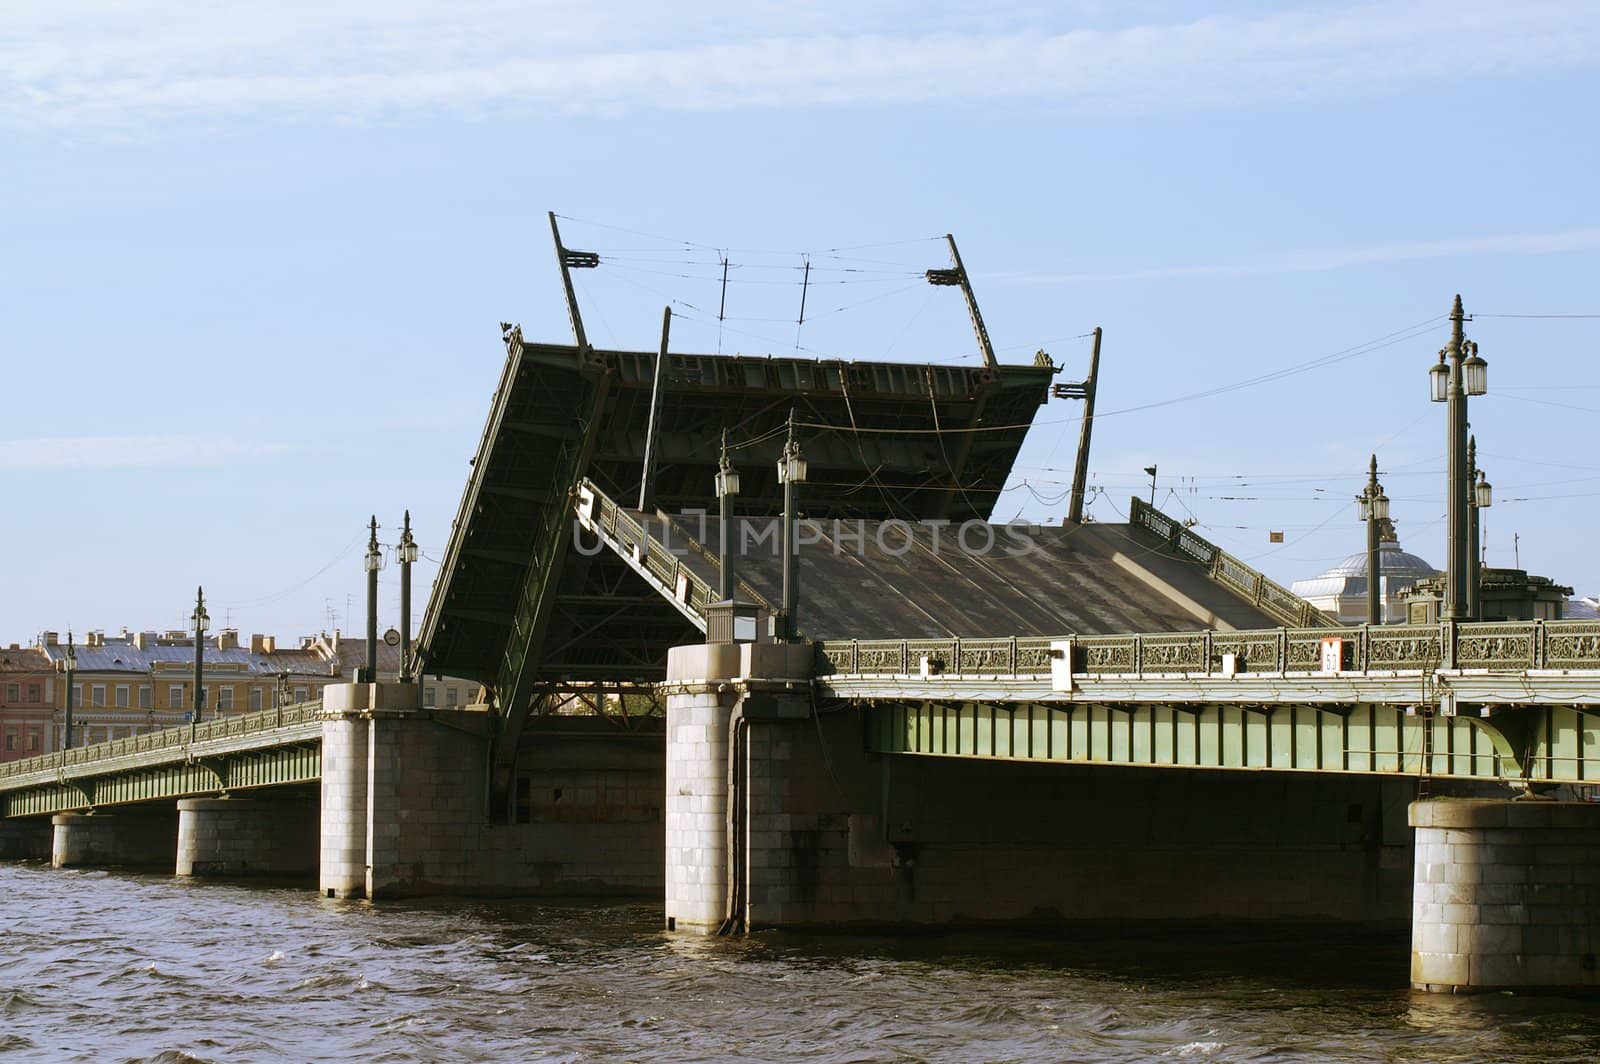 Raising the Schmidt's Bridge over Neva river in Saint Petersburg, Russia.